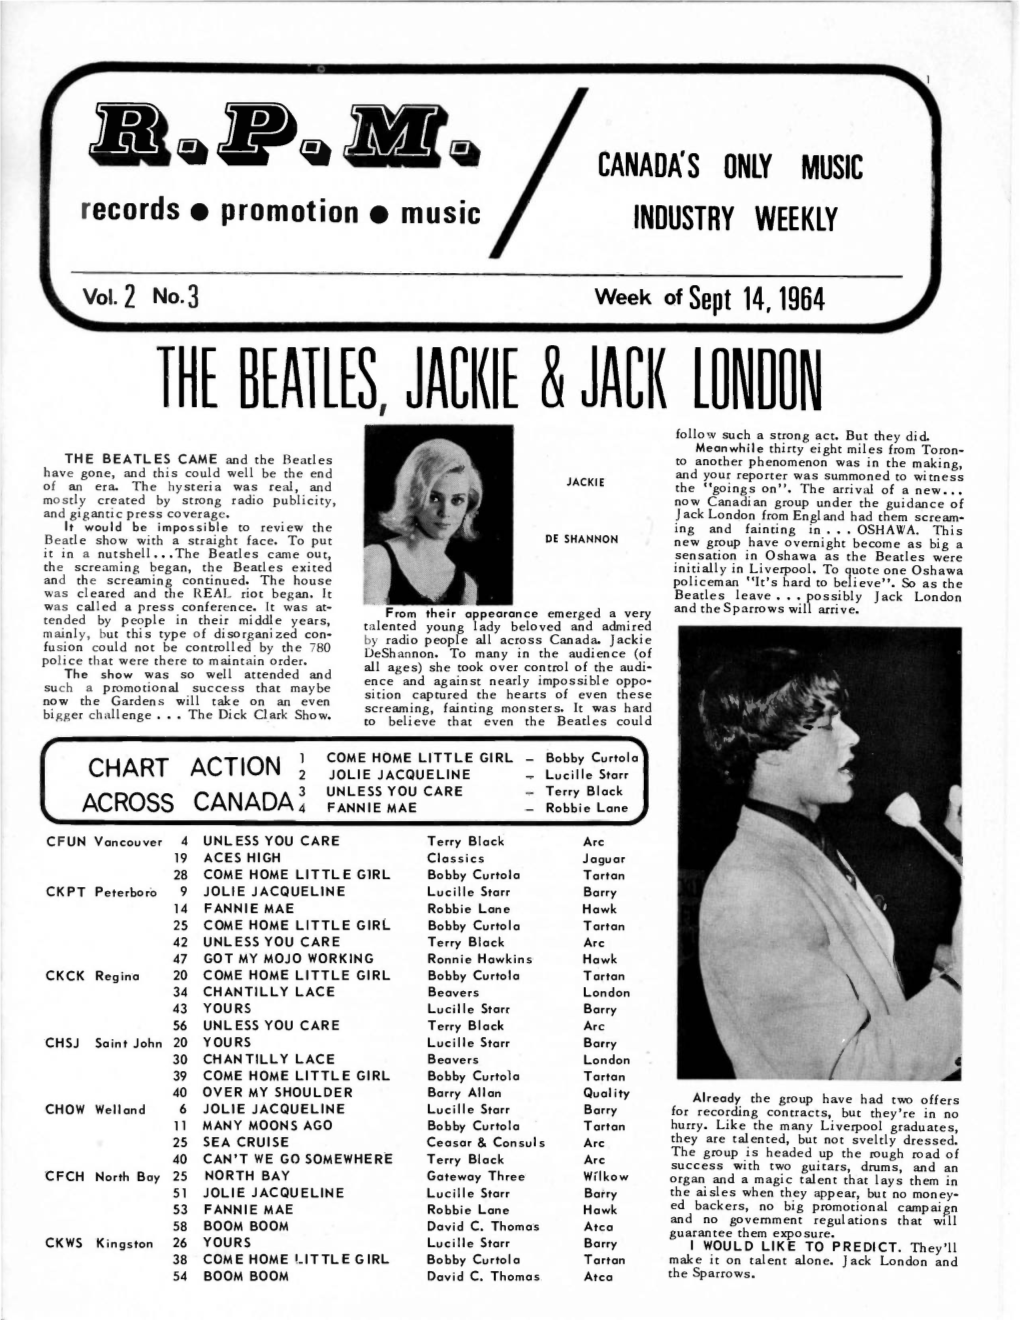 The Beatles, Jackie & Jack London